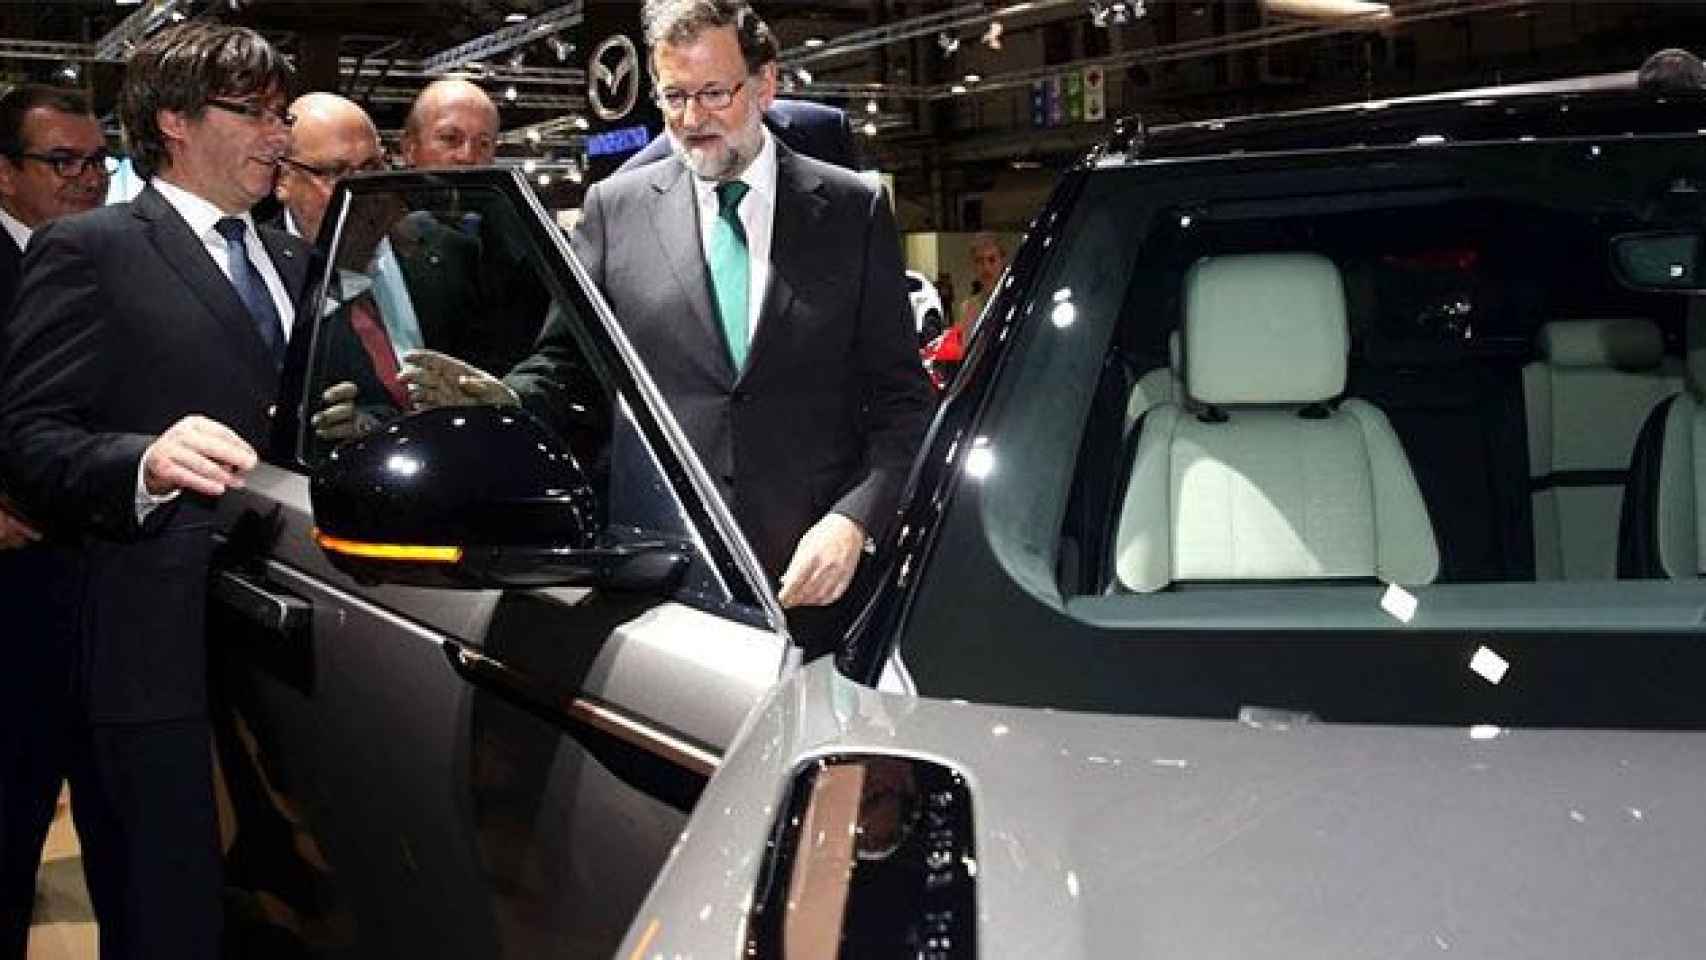 Carles Puigdemont y Mariano Rajoy visitando el Salón del Automóvil de Barcelona / EFE